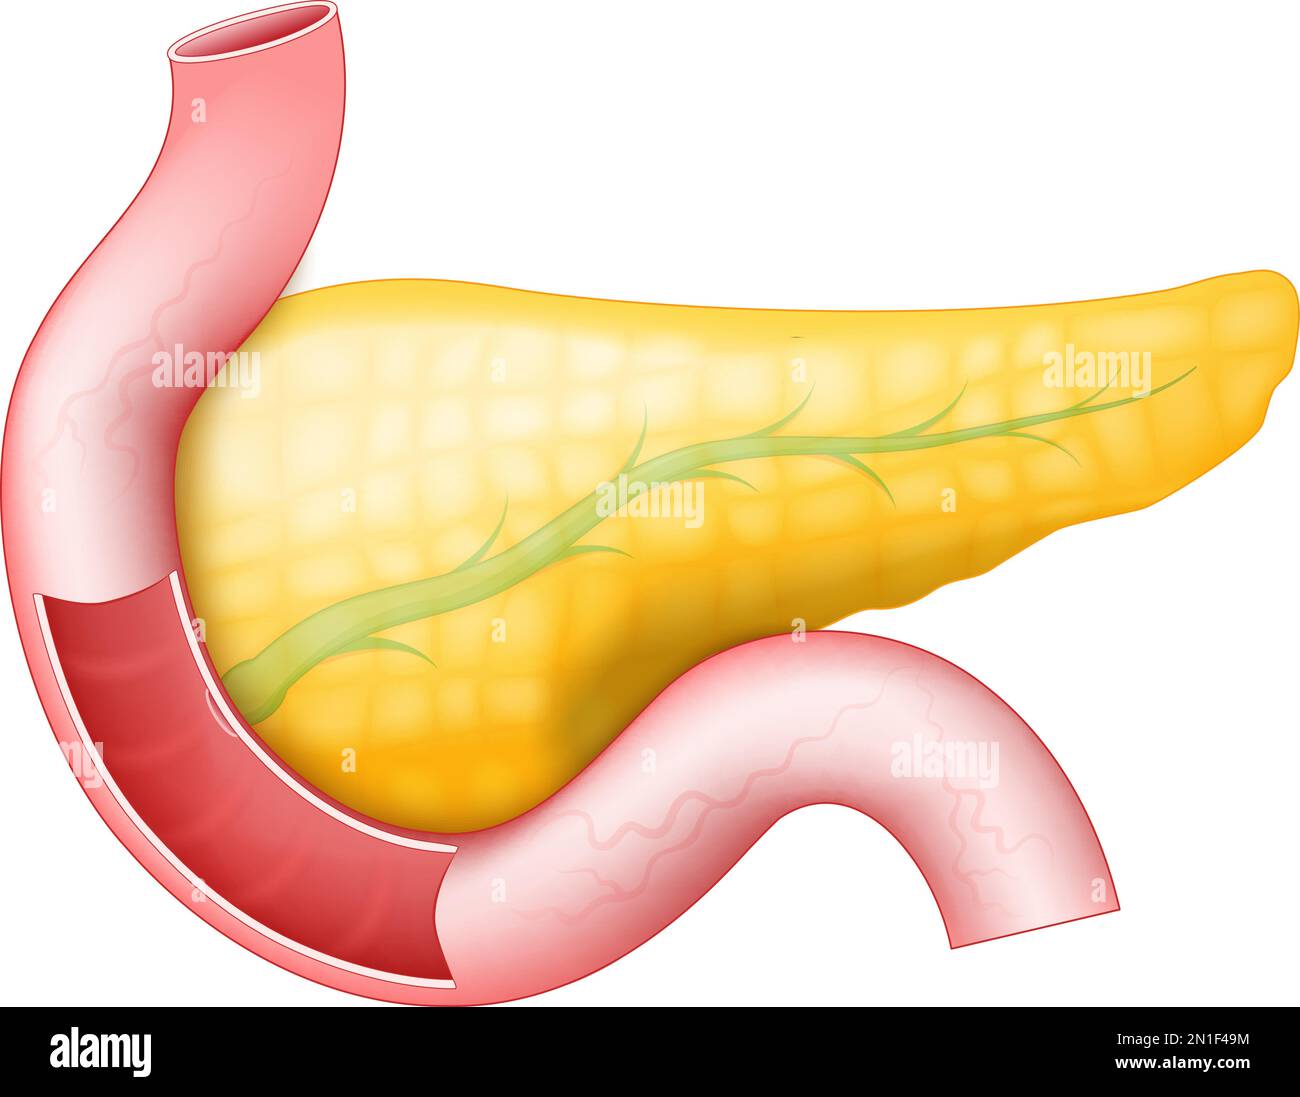 Pankreas mit Pankreasgang, Duodenum und Dünndarm auf weißem Hintergrund. Menschliche Anatomie. Teil eines menschlichen Verdauungssystems. vektor Stock Vektor